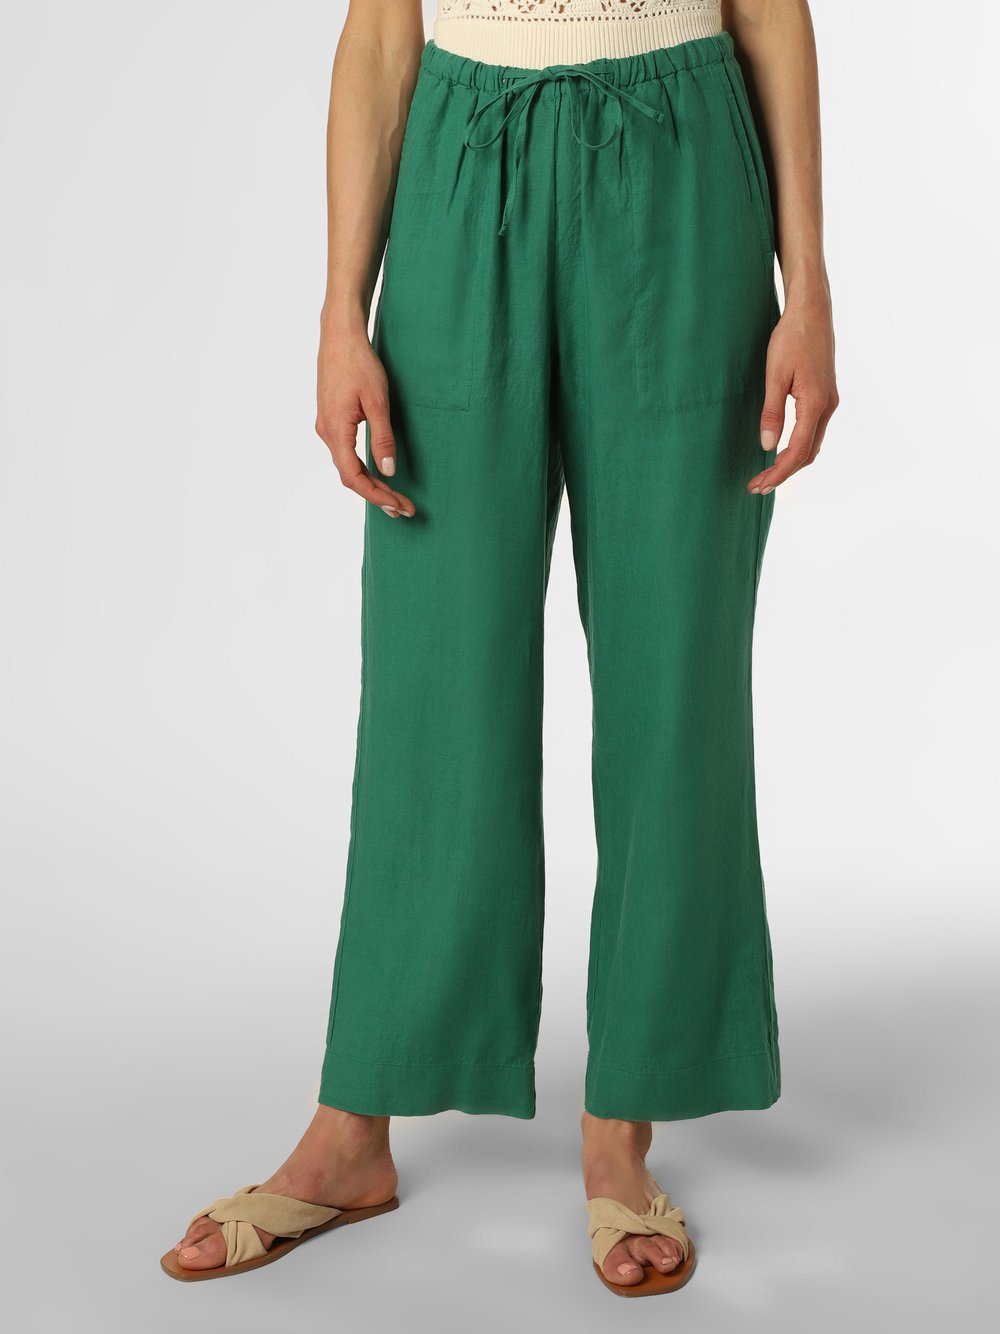 Marc O'Polo - Damskie spodnie lniane, zielony